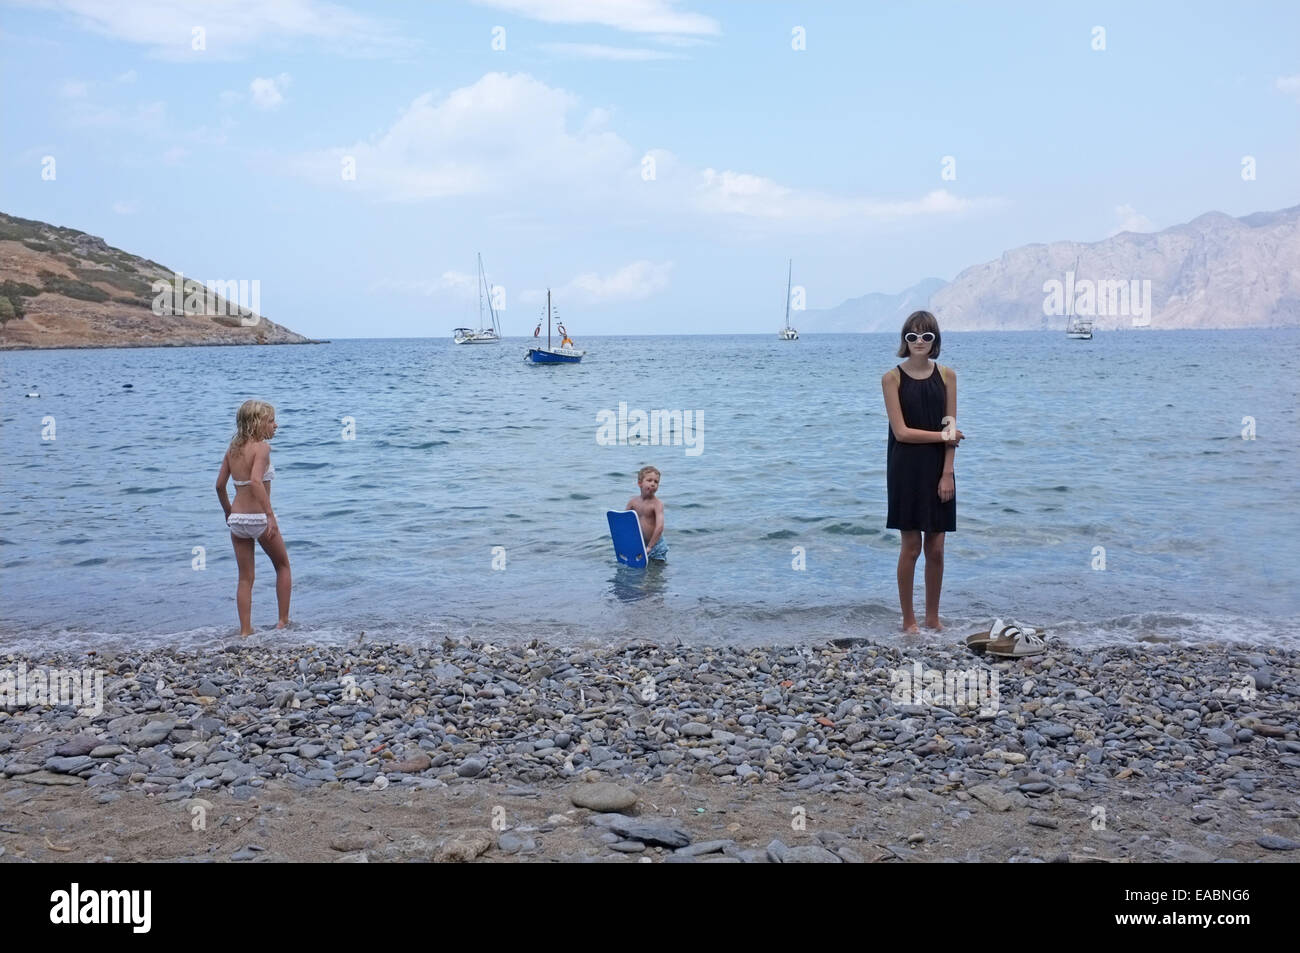 Una adolescente en vacaciones en Creta vigilado por dos niños Foto de stock